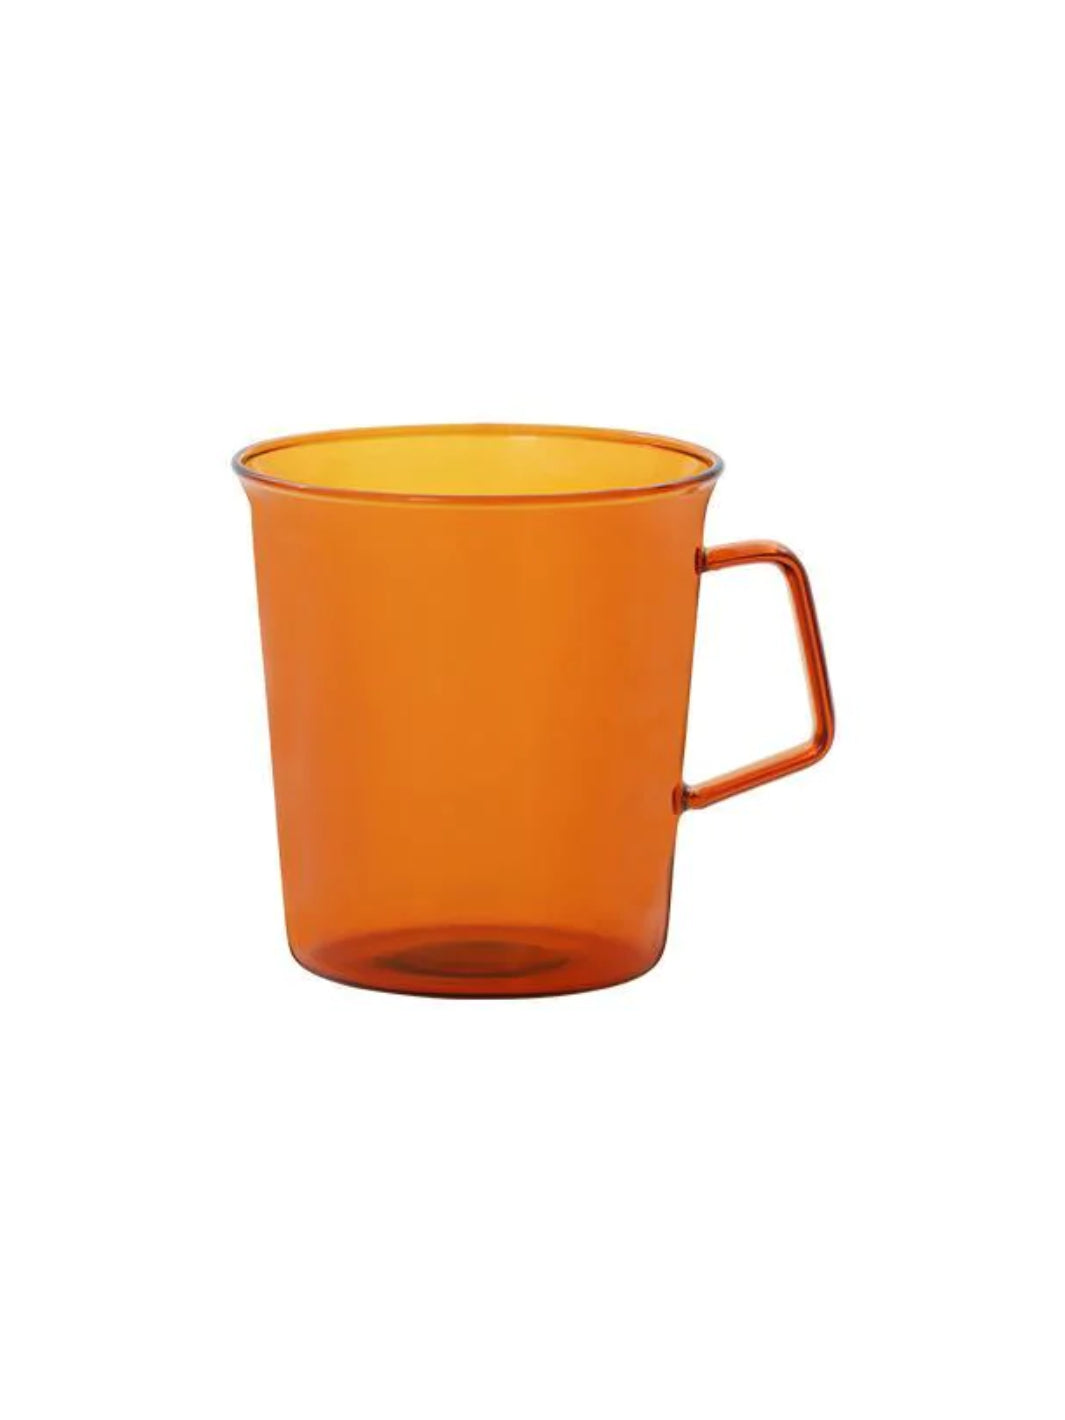 KINTO CAST AMBER Mug (310ml/10.5oz)